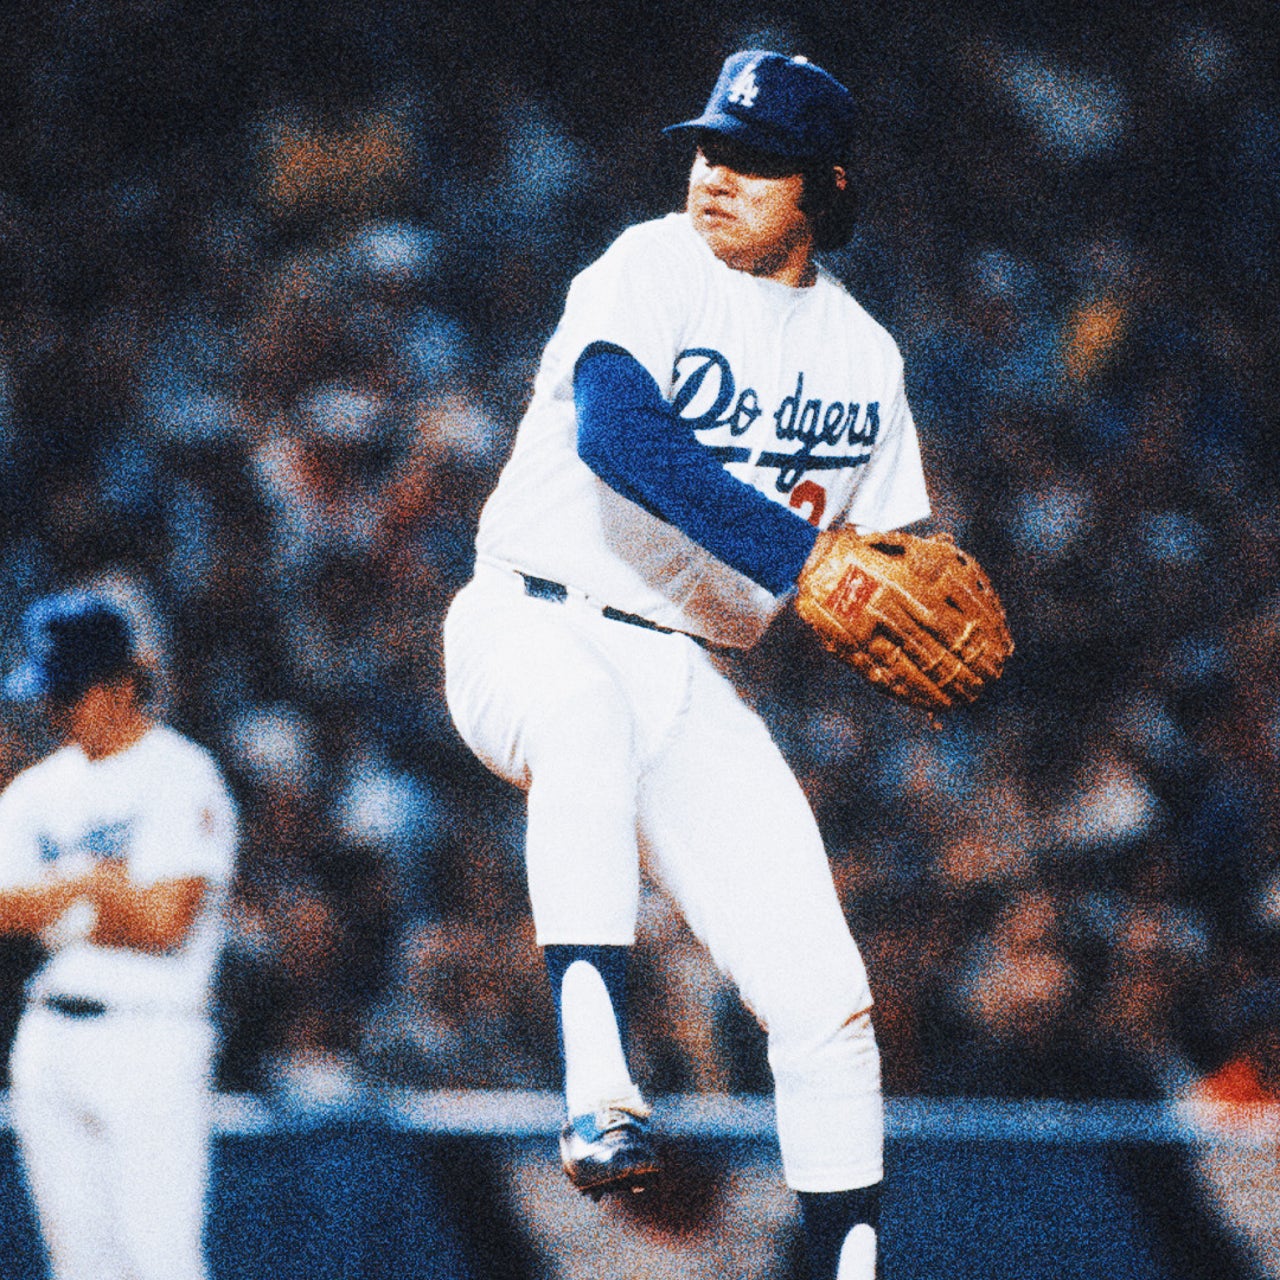 Dodgers, at fans' urging, finally retiring Fernando Valenzuela's number